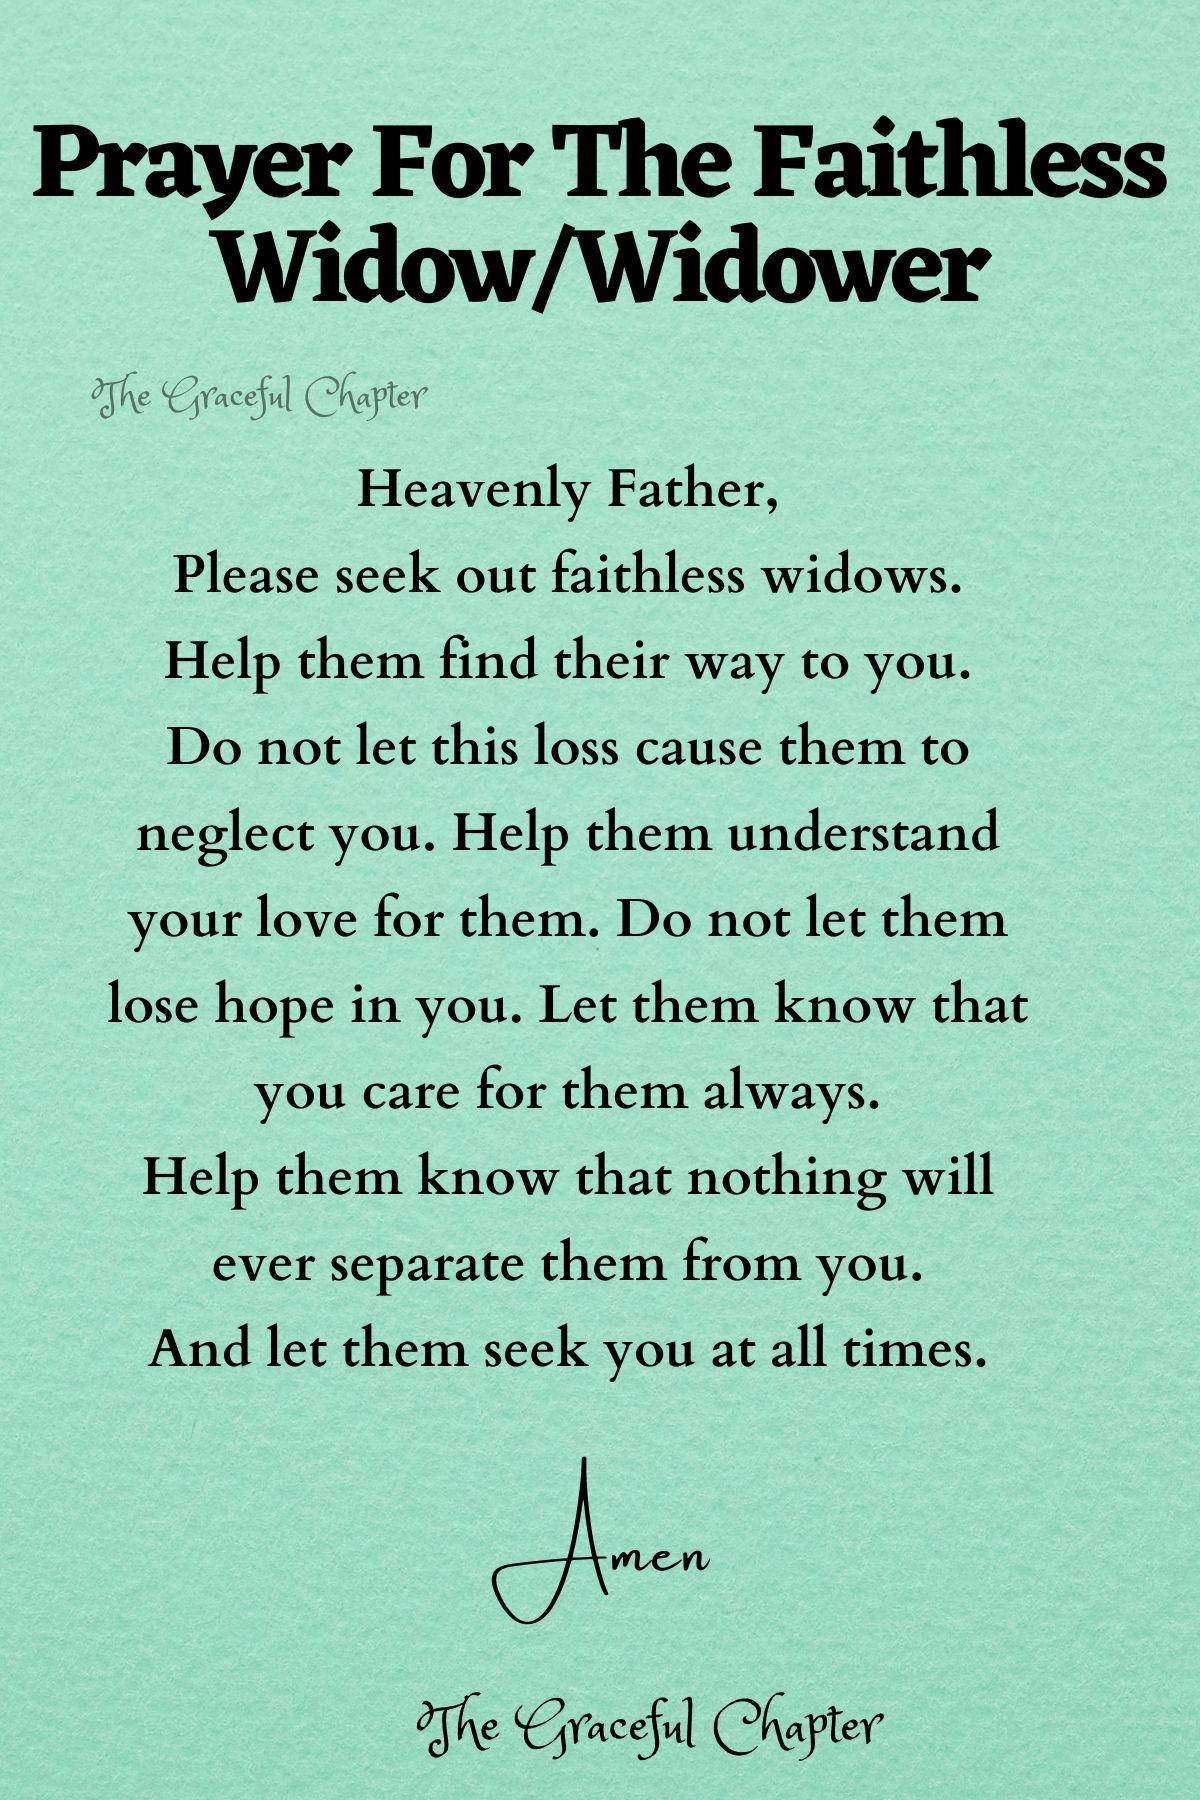 Prayer for the faithless widow/widower